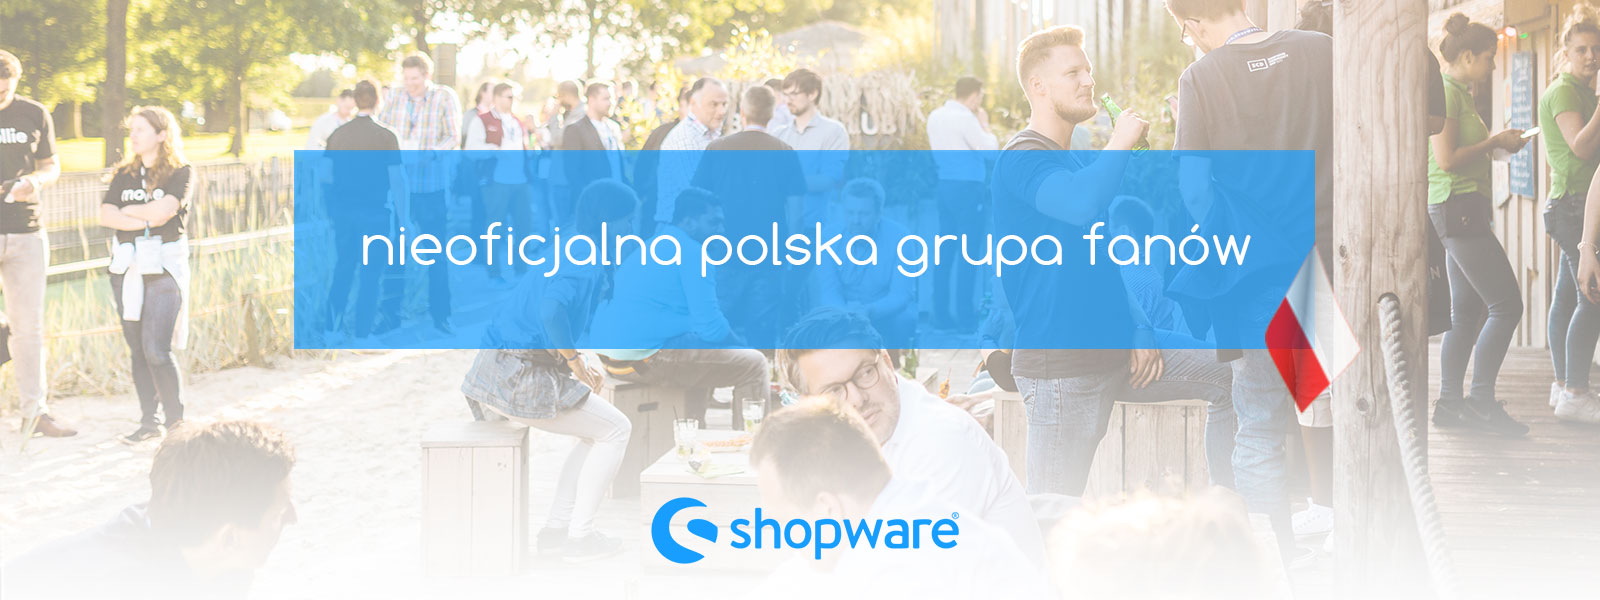 shopware_polska